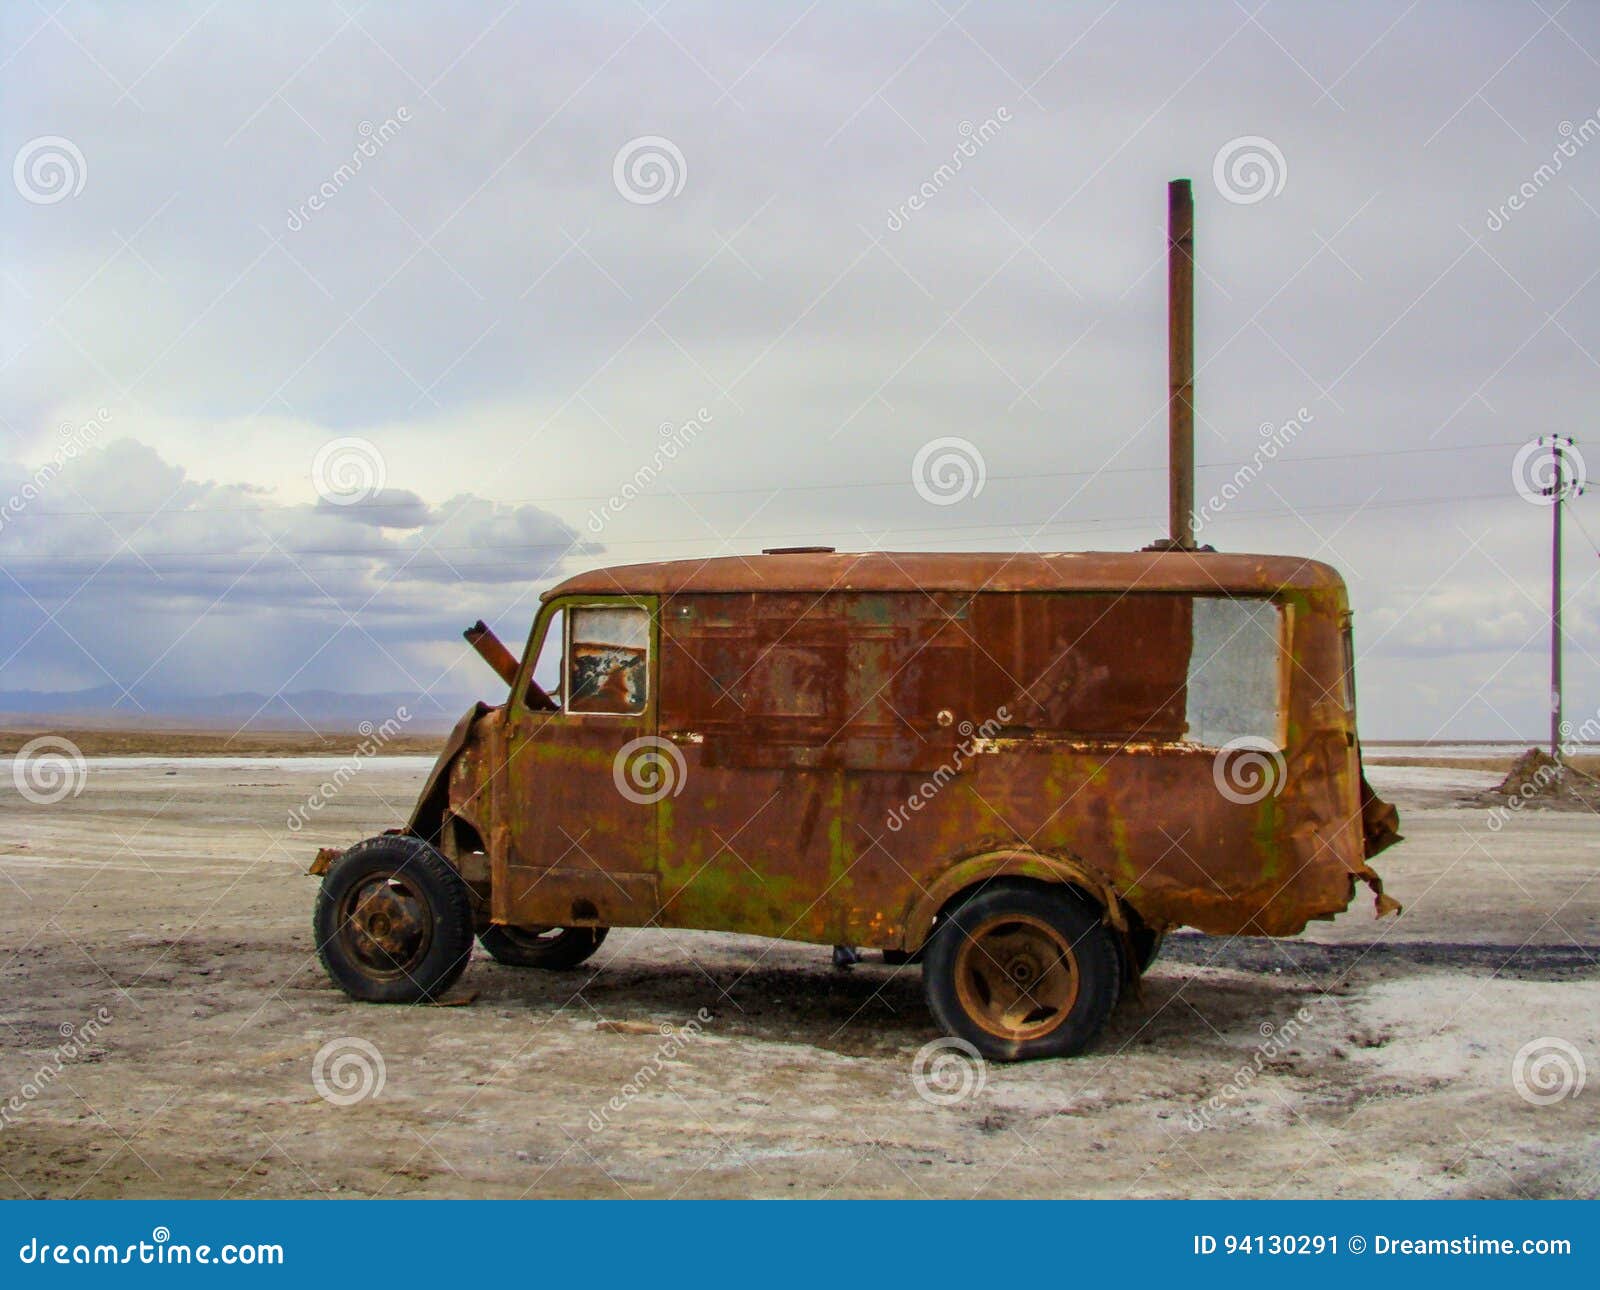 在地面上的老丰富的汽车. 有它生锈的金属的一辆老丰富的汽车在盐地面